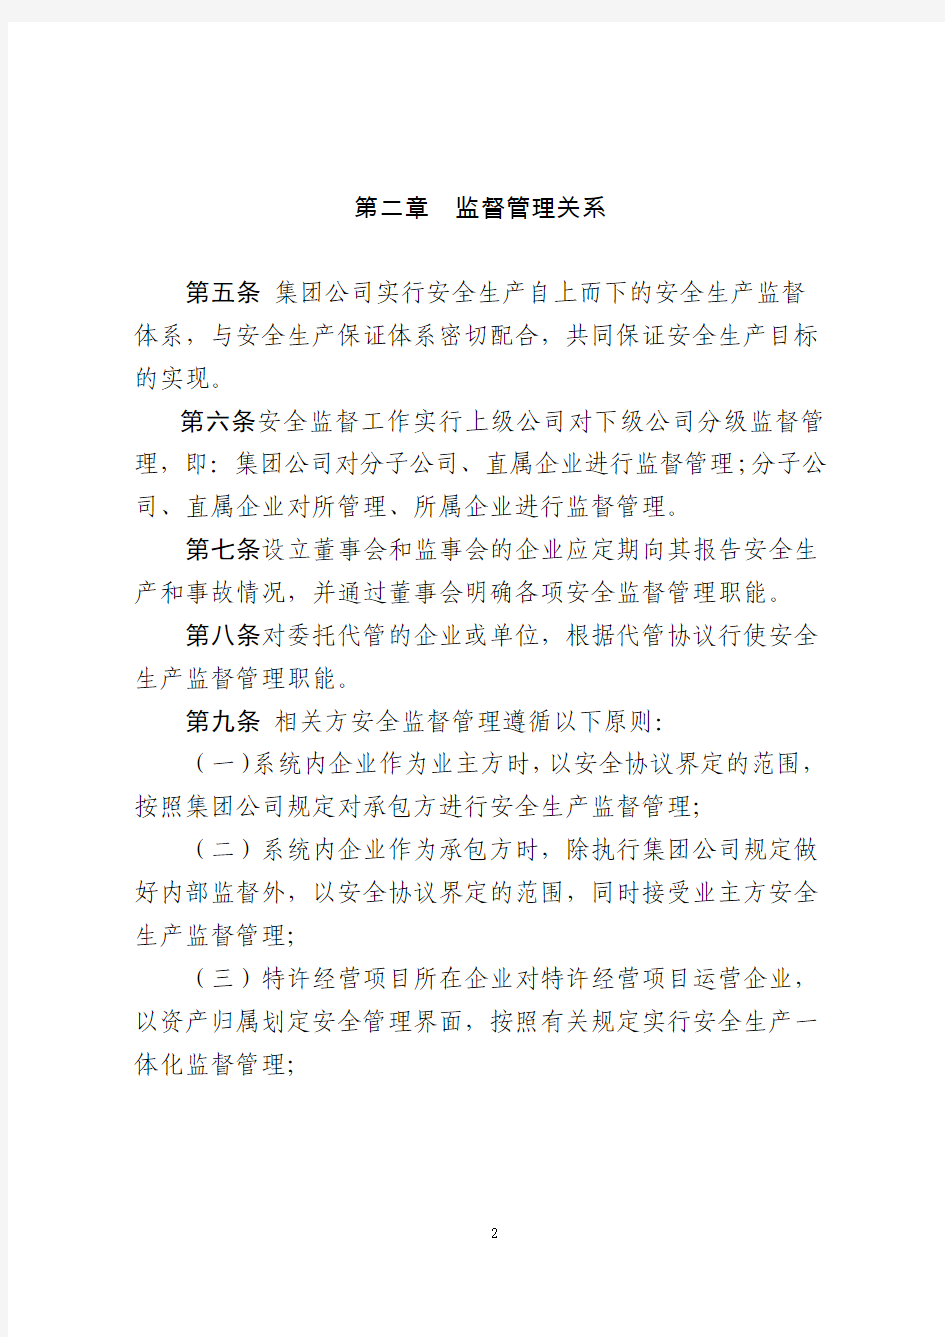 中国大唐集团公司安全生产监督工作规定